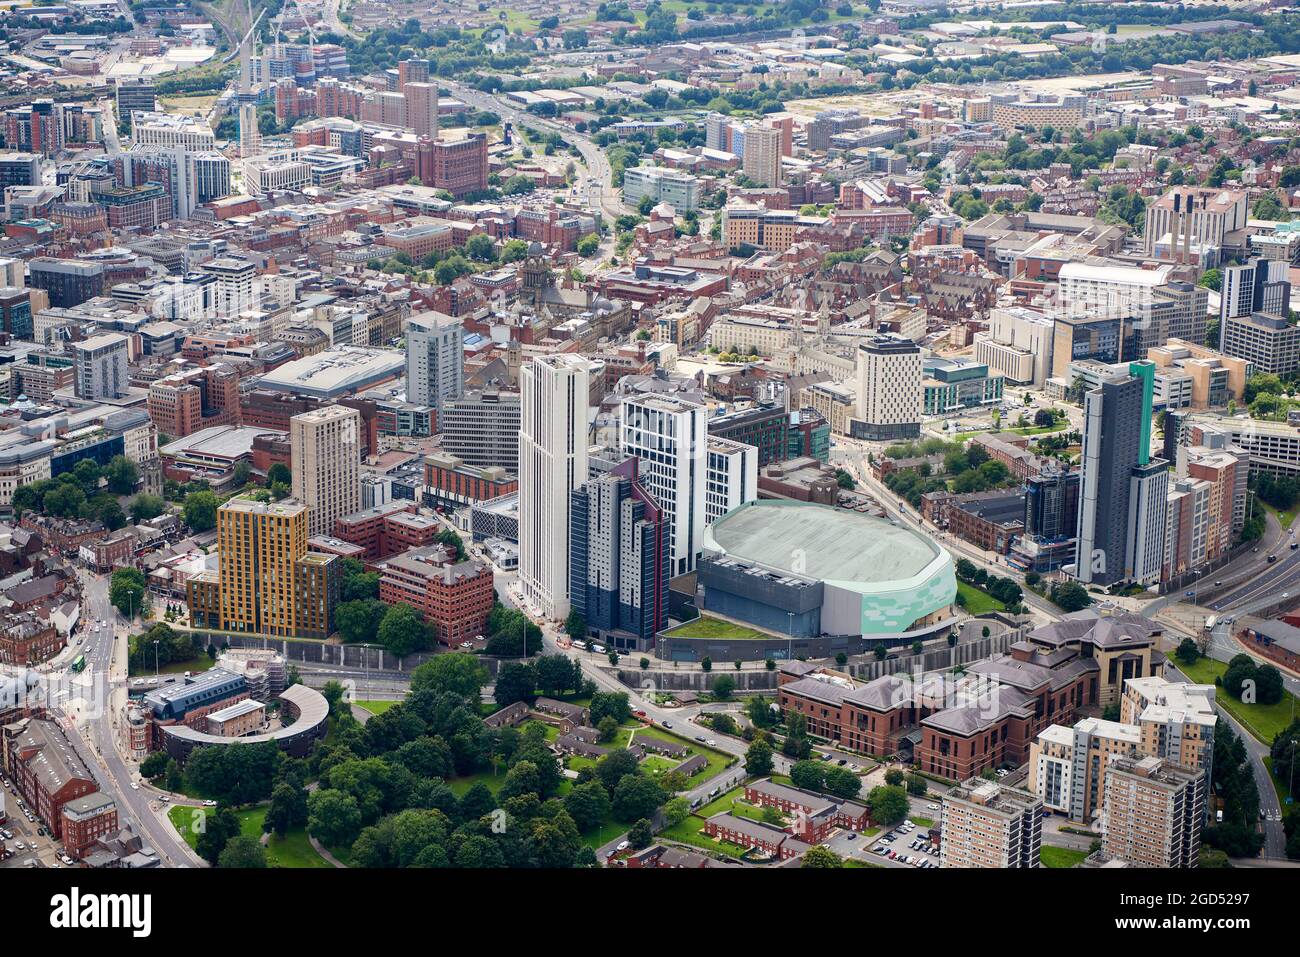 Une vue aérienne des tours d'hébergement des nouveaux étudiants, Leeds City Centre, West Yorkshire, nord de l'Angleterre, Royaume-Uni Banque D'Images